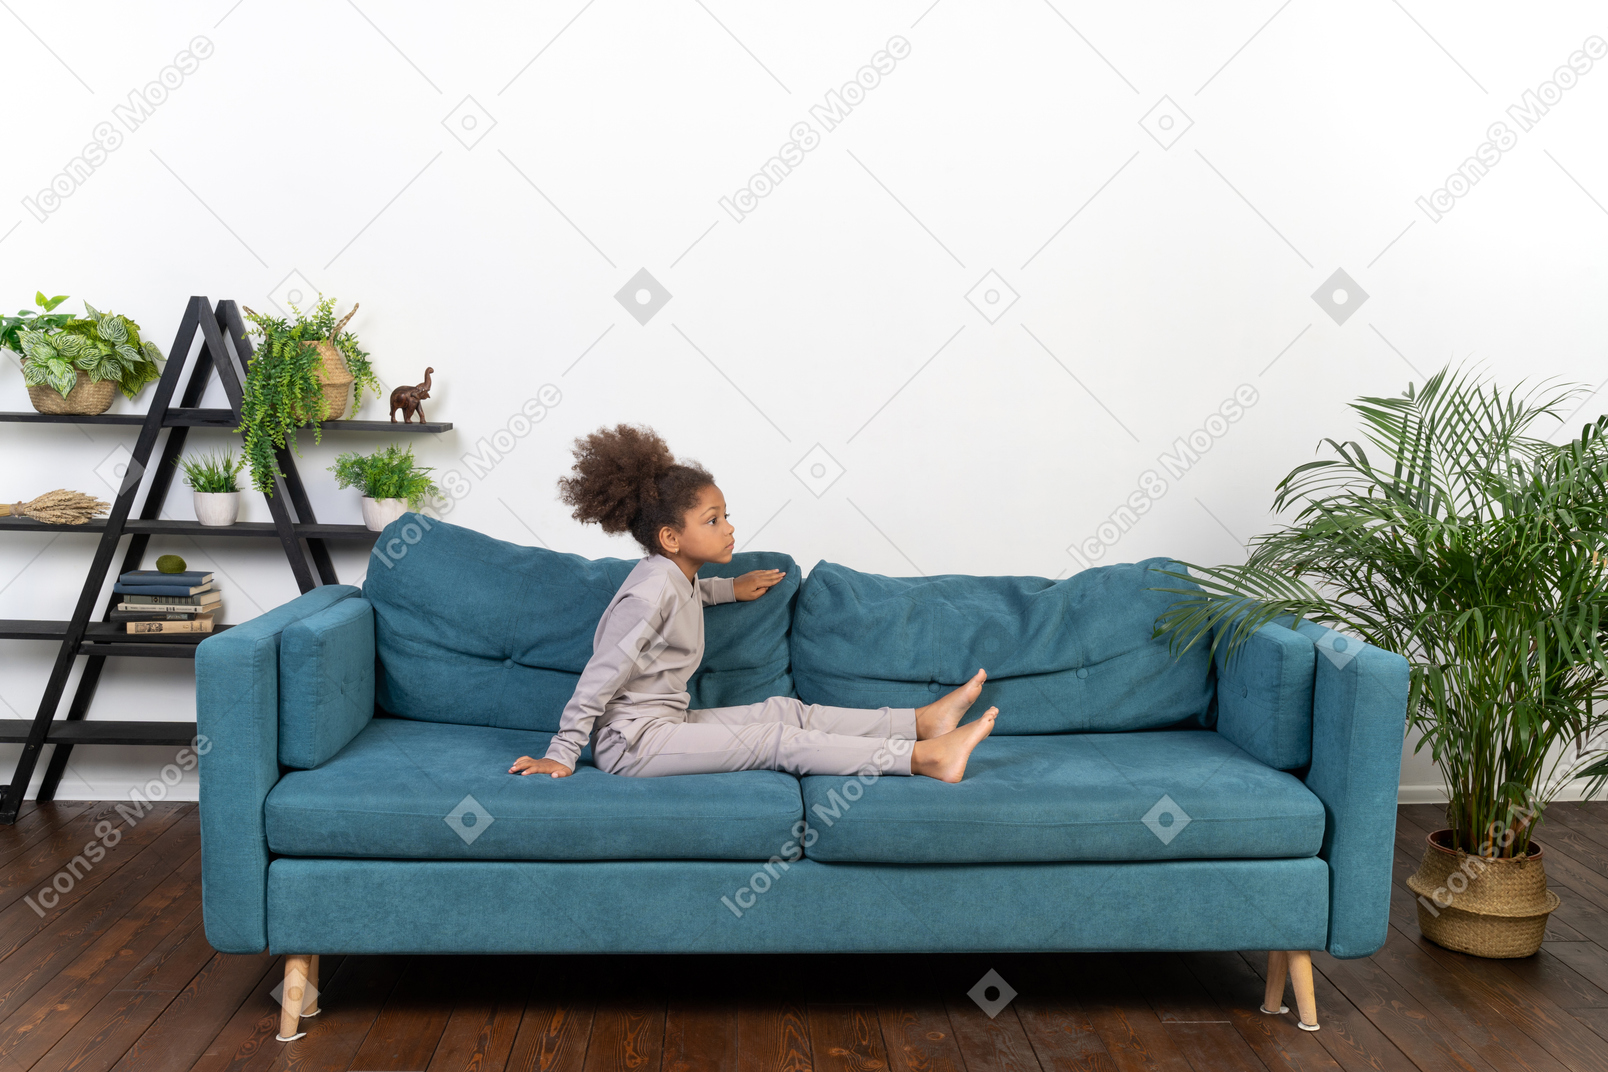 Cute girl on the sofa